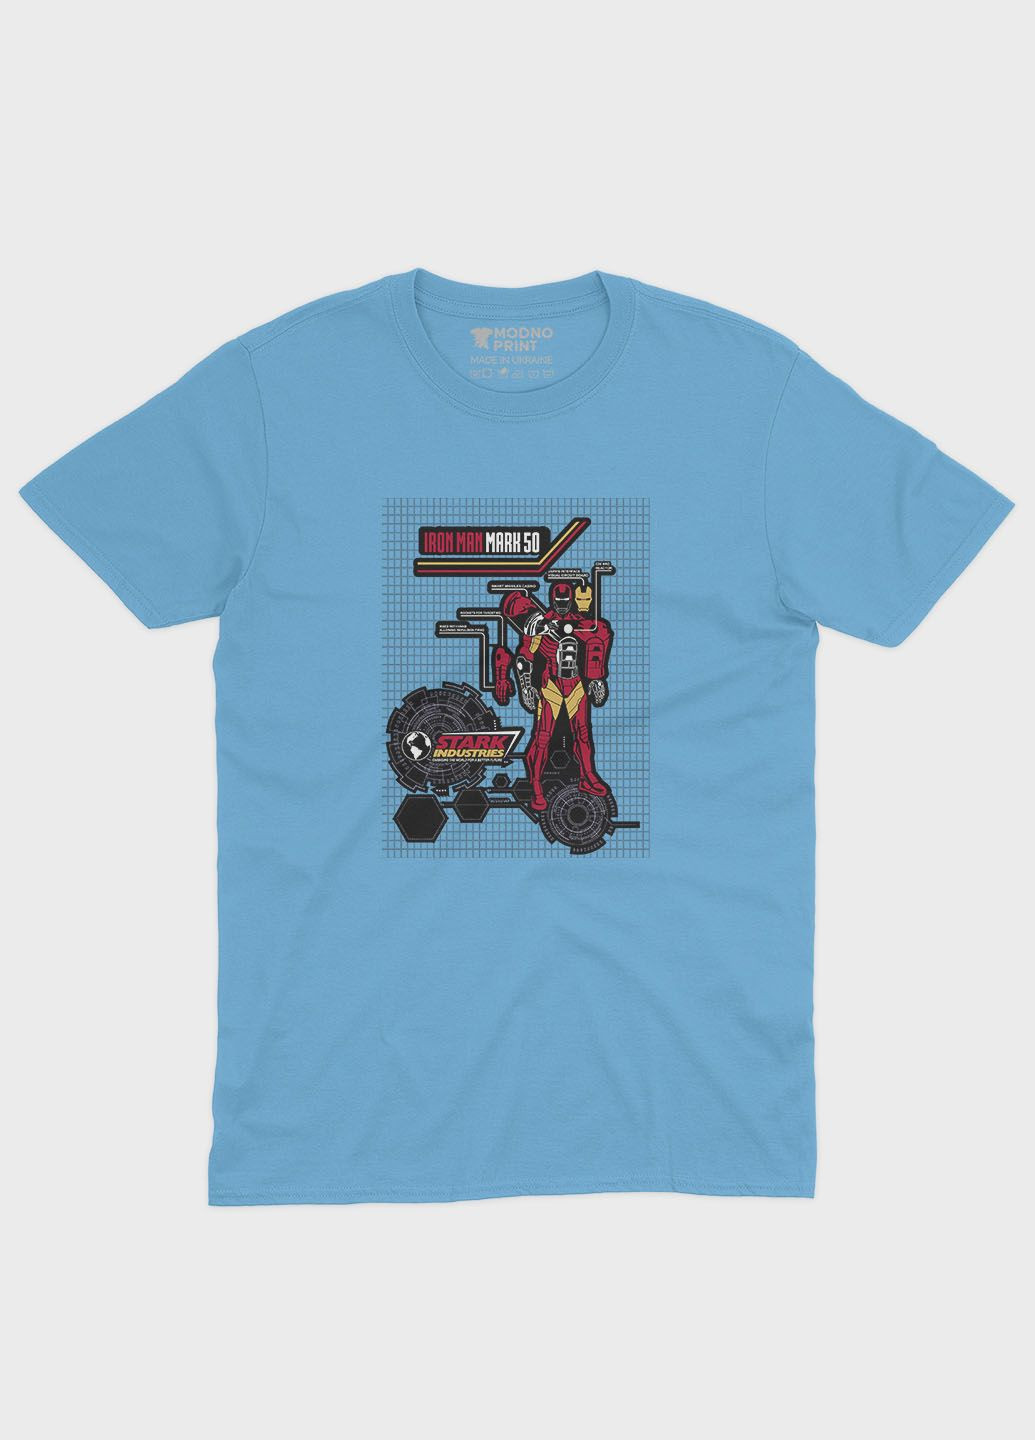 Голубая демисезонная футболка для девочки с принтом супергероя - железный человек (ts001-1-lbl-006-016-014-g) Modno